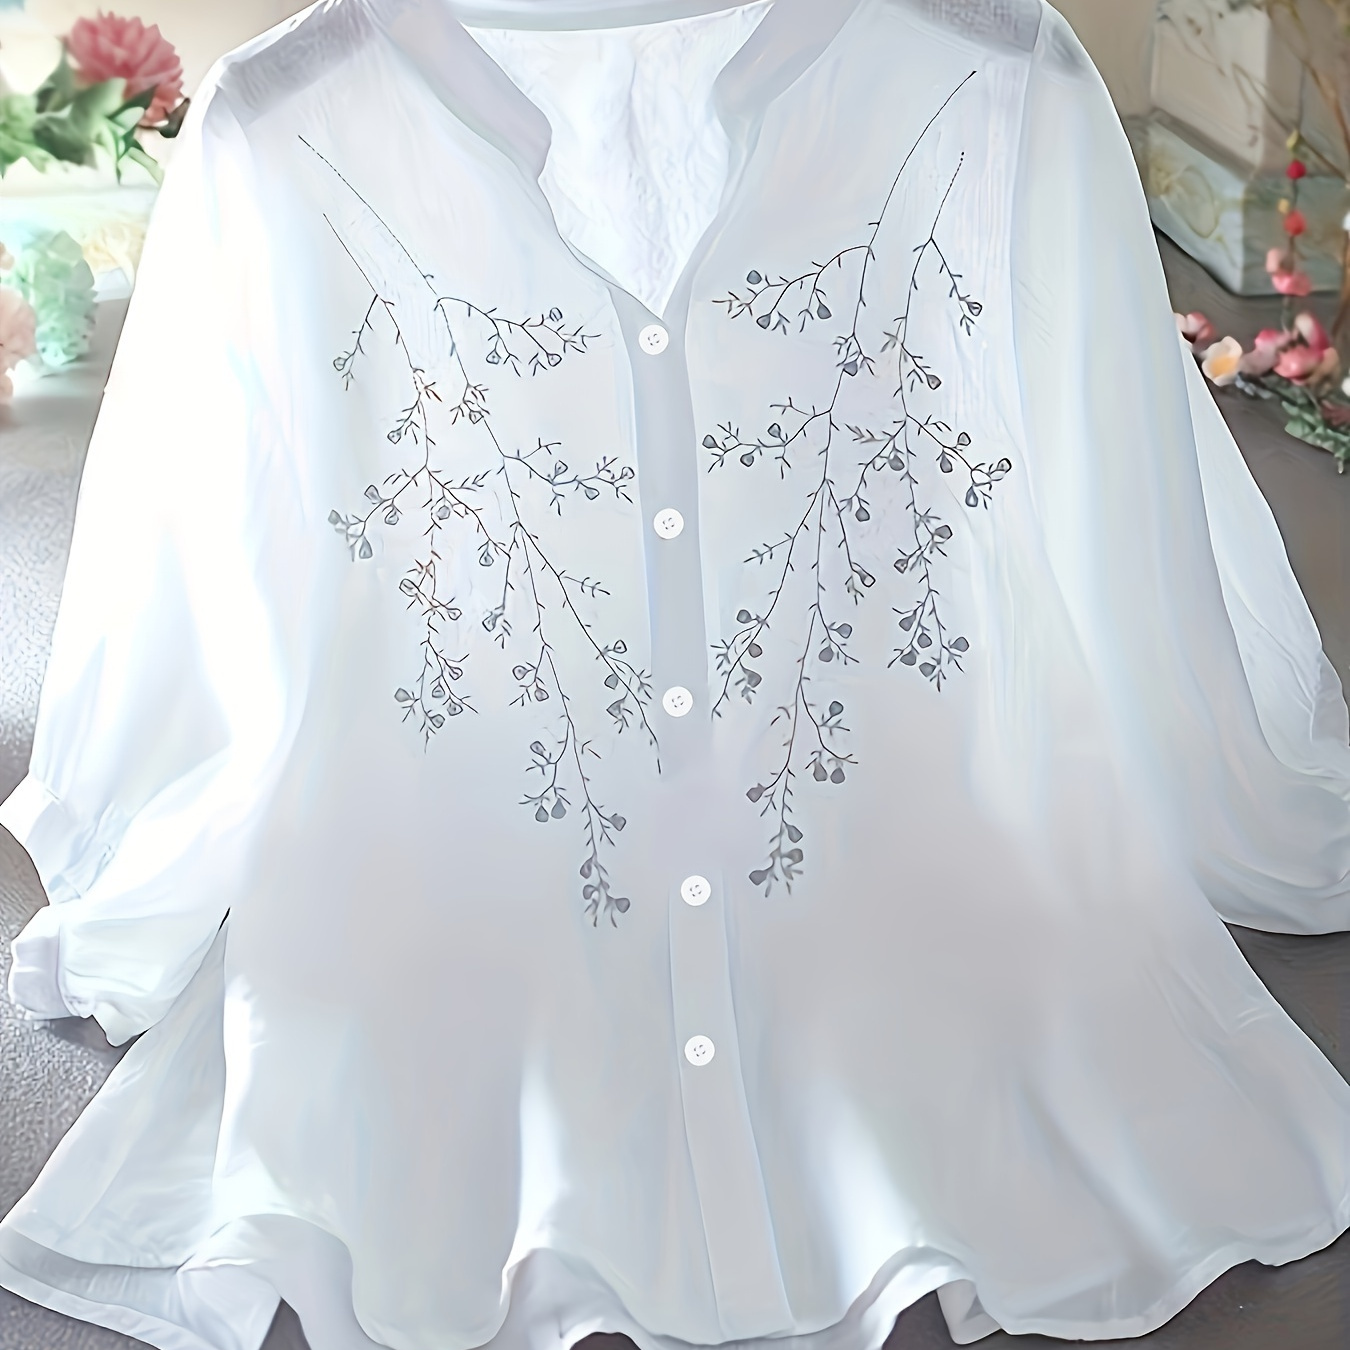 Blusa de padrão floral simples, Blusa elegante com botões na frente e gola alta, Roupas femininas